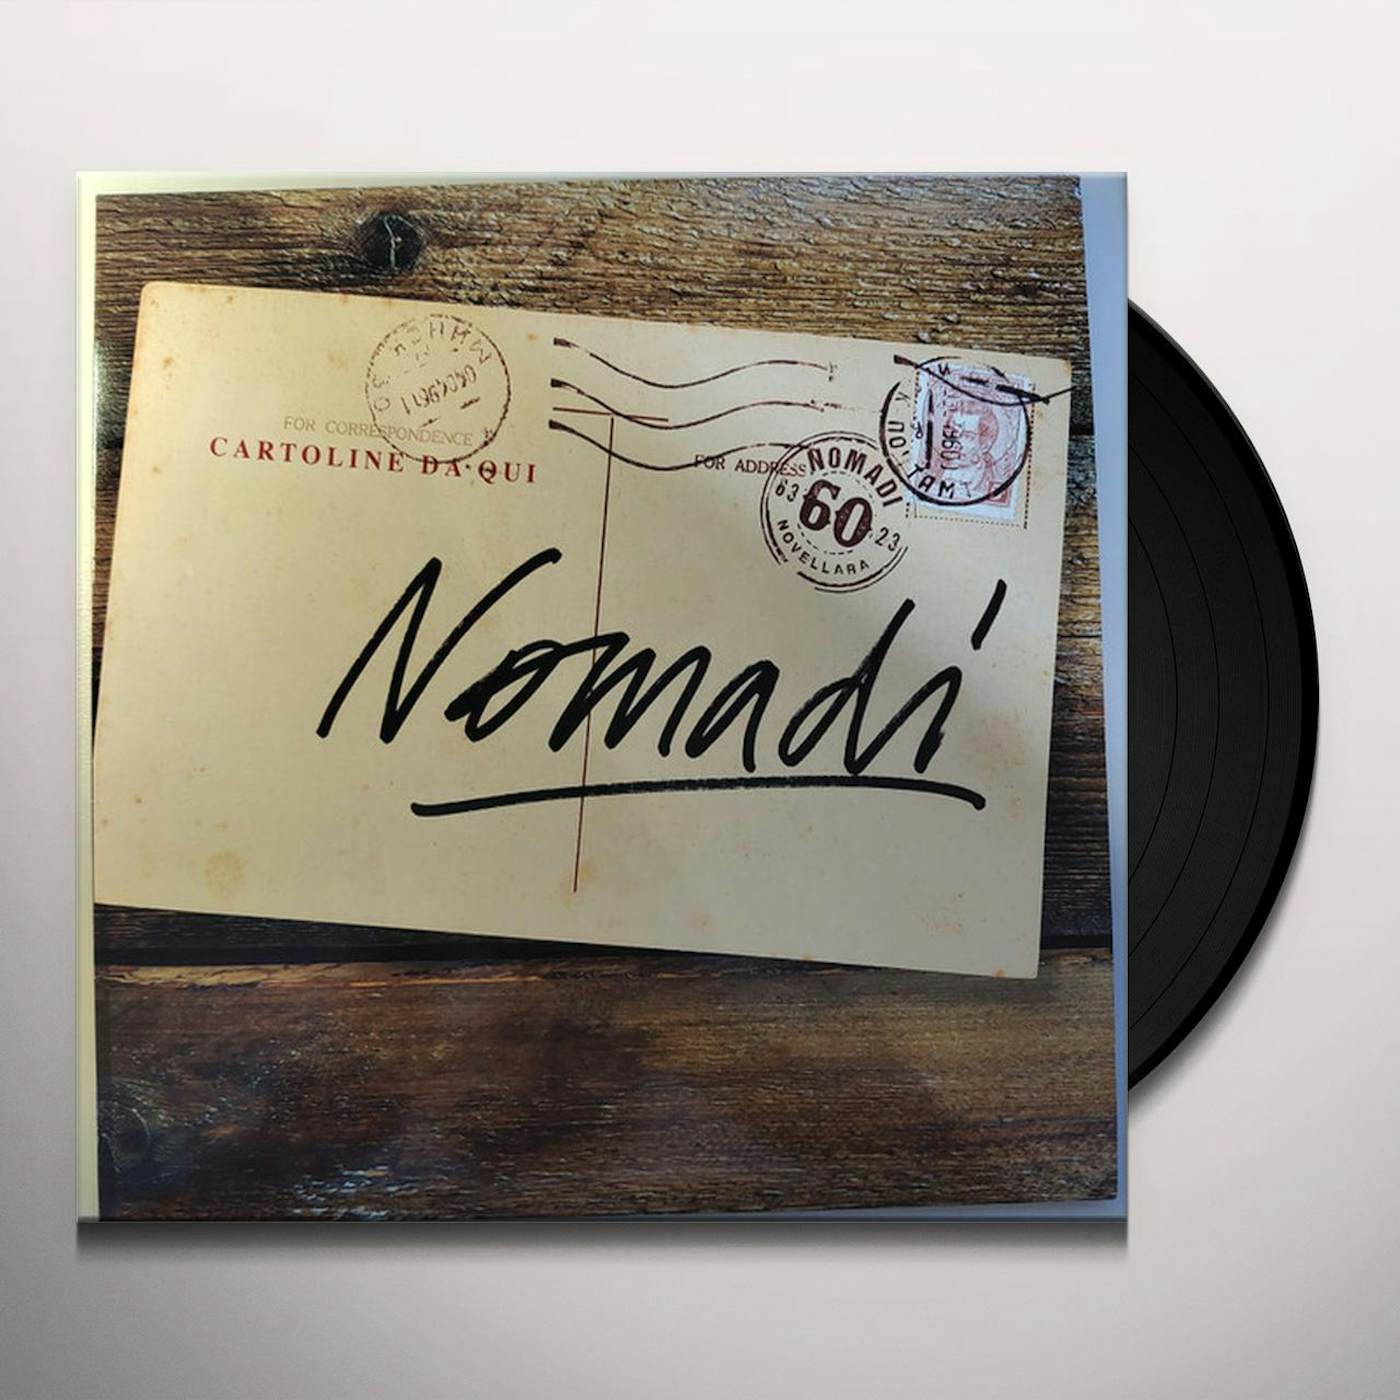 Nomadi CARTOLINE DA QUI Vinyl Record